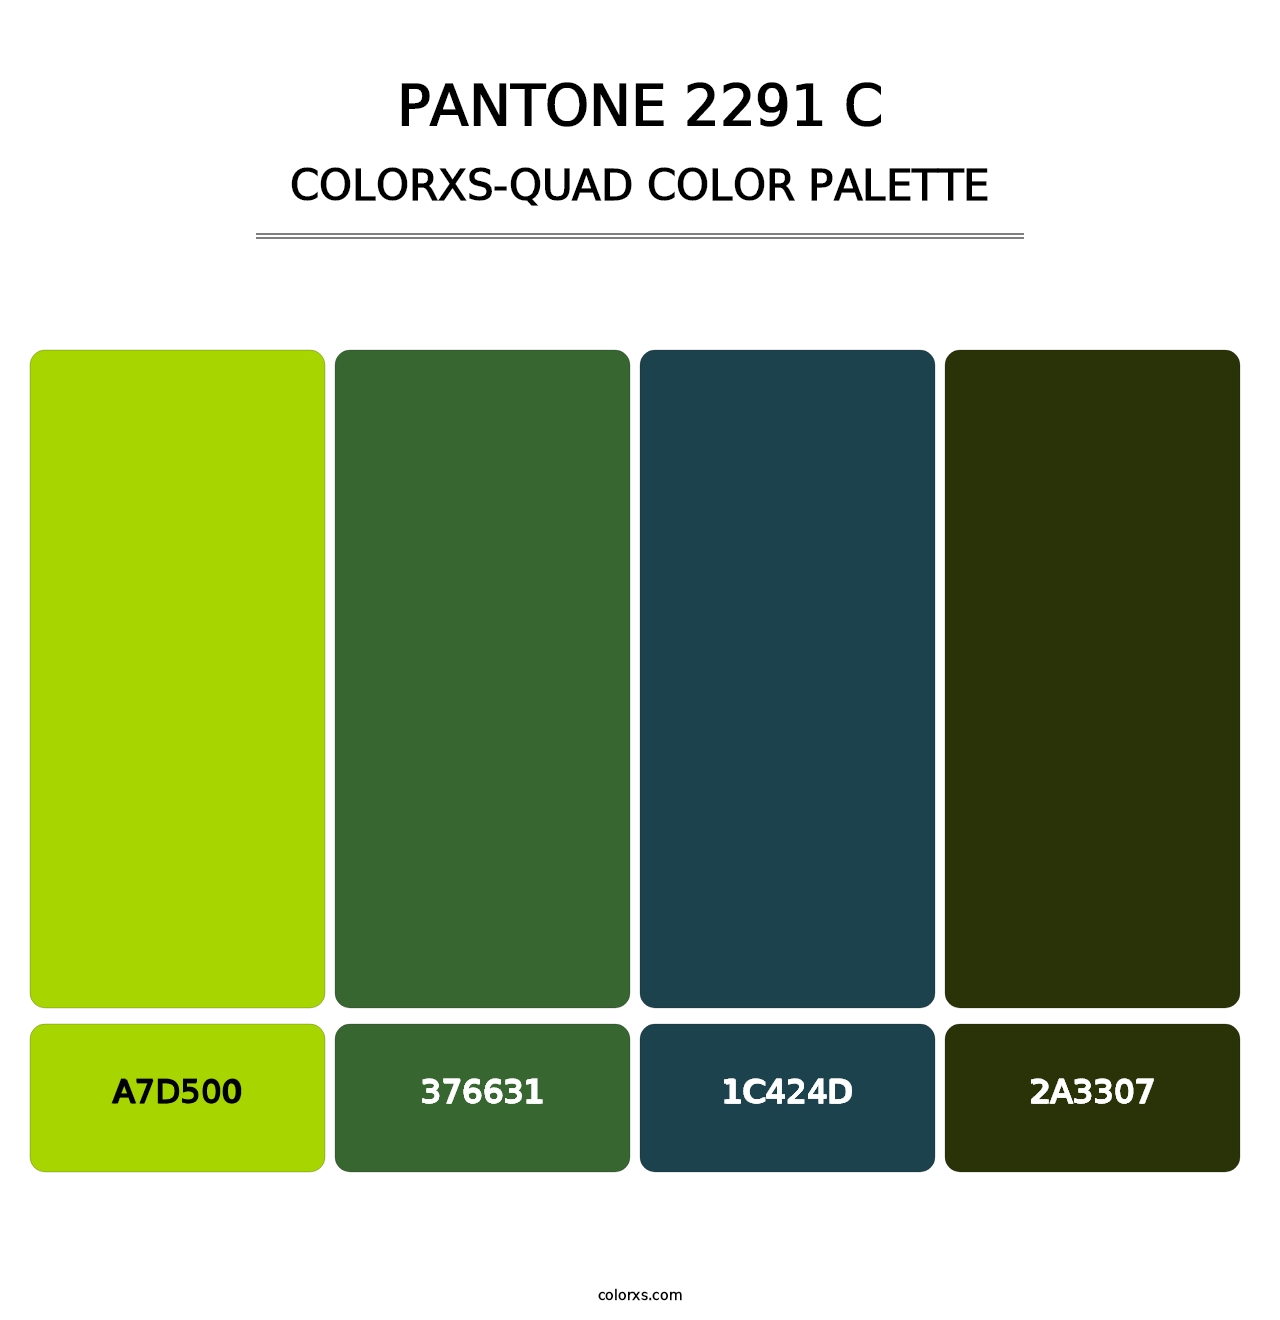 PANTONE 2291 C - Colorxs Quad Palette